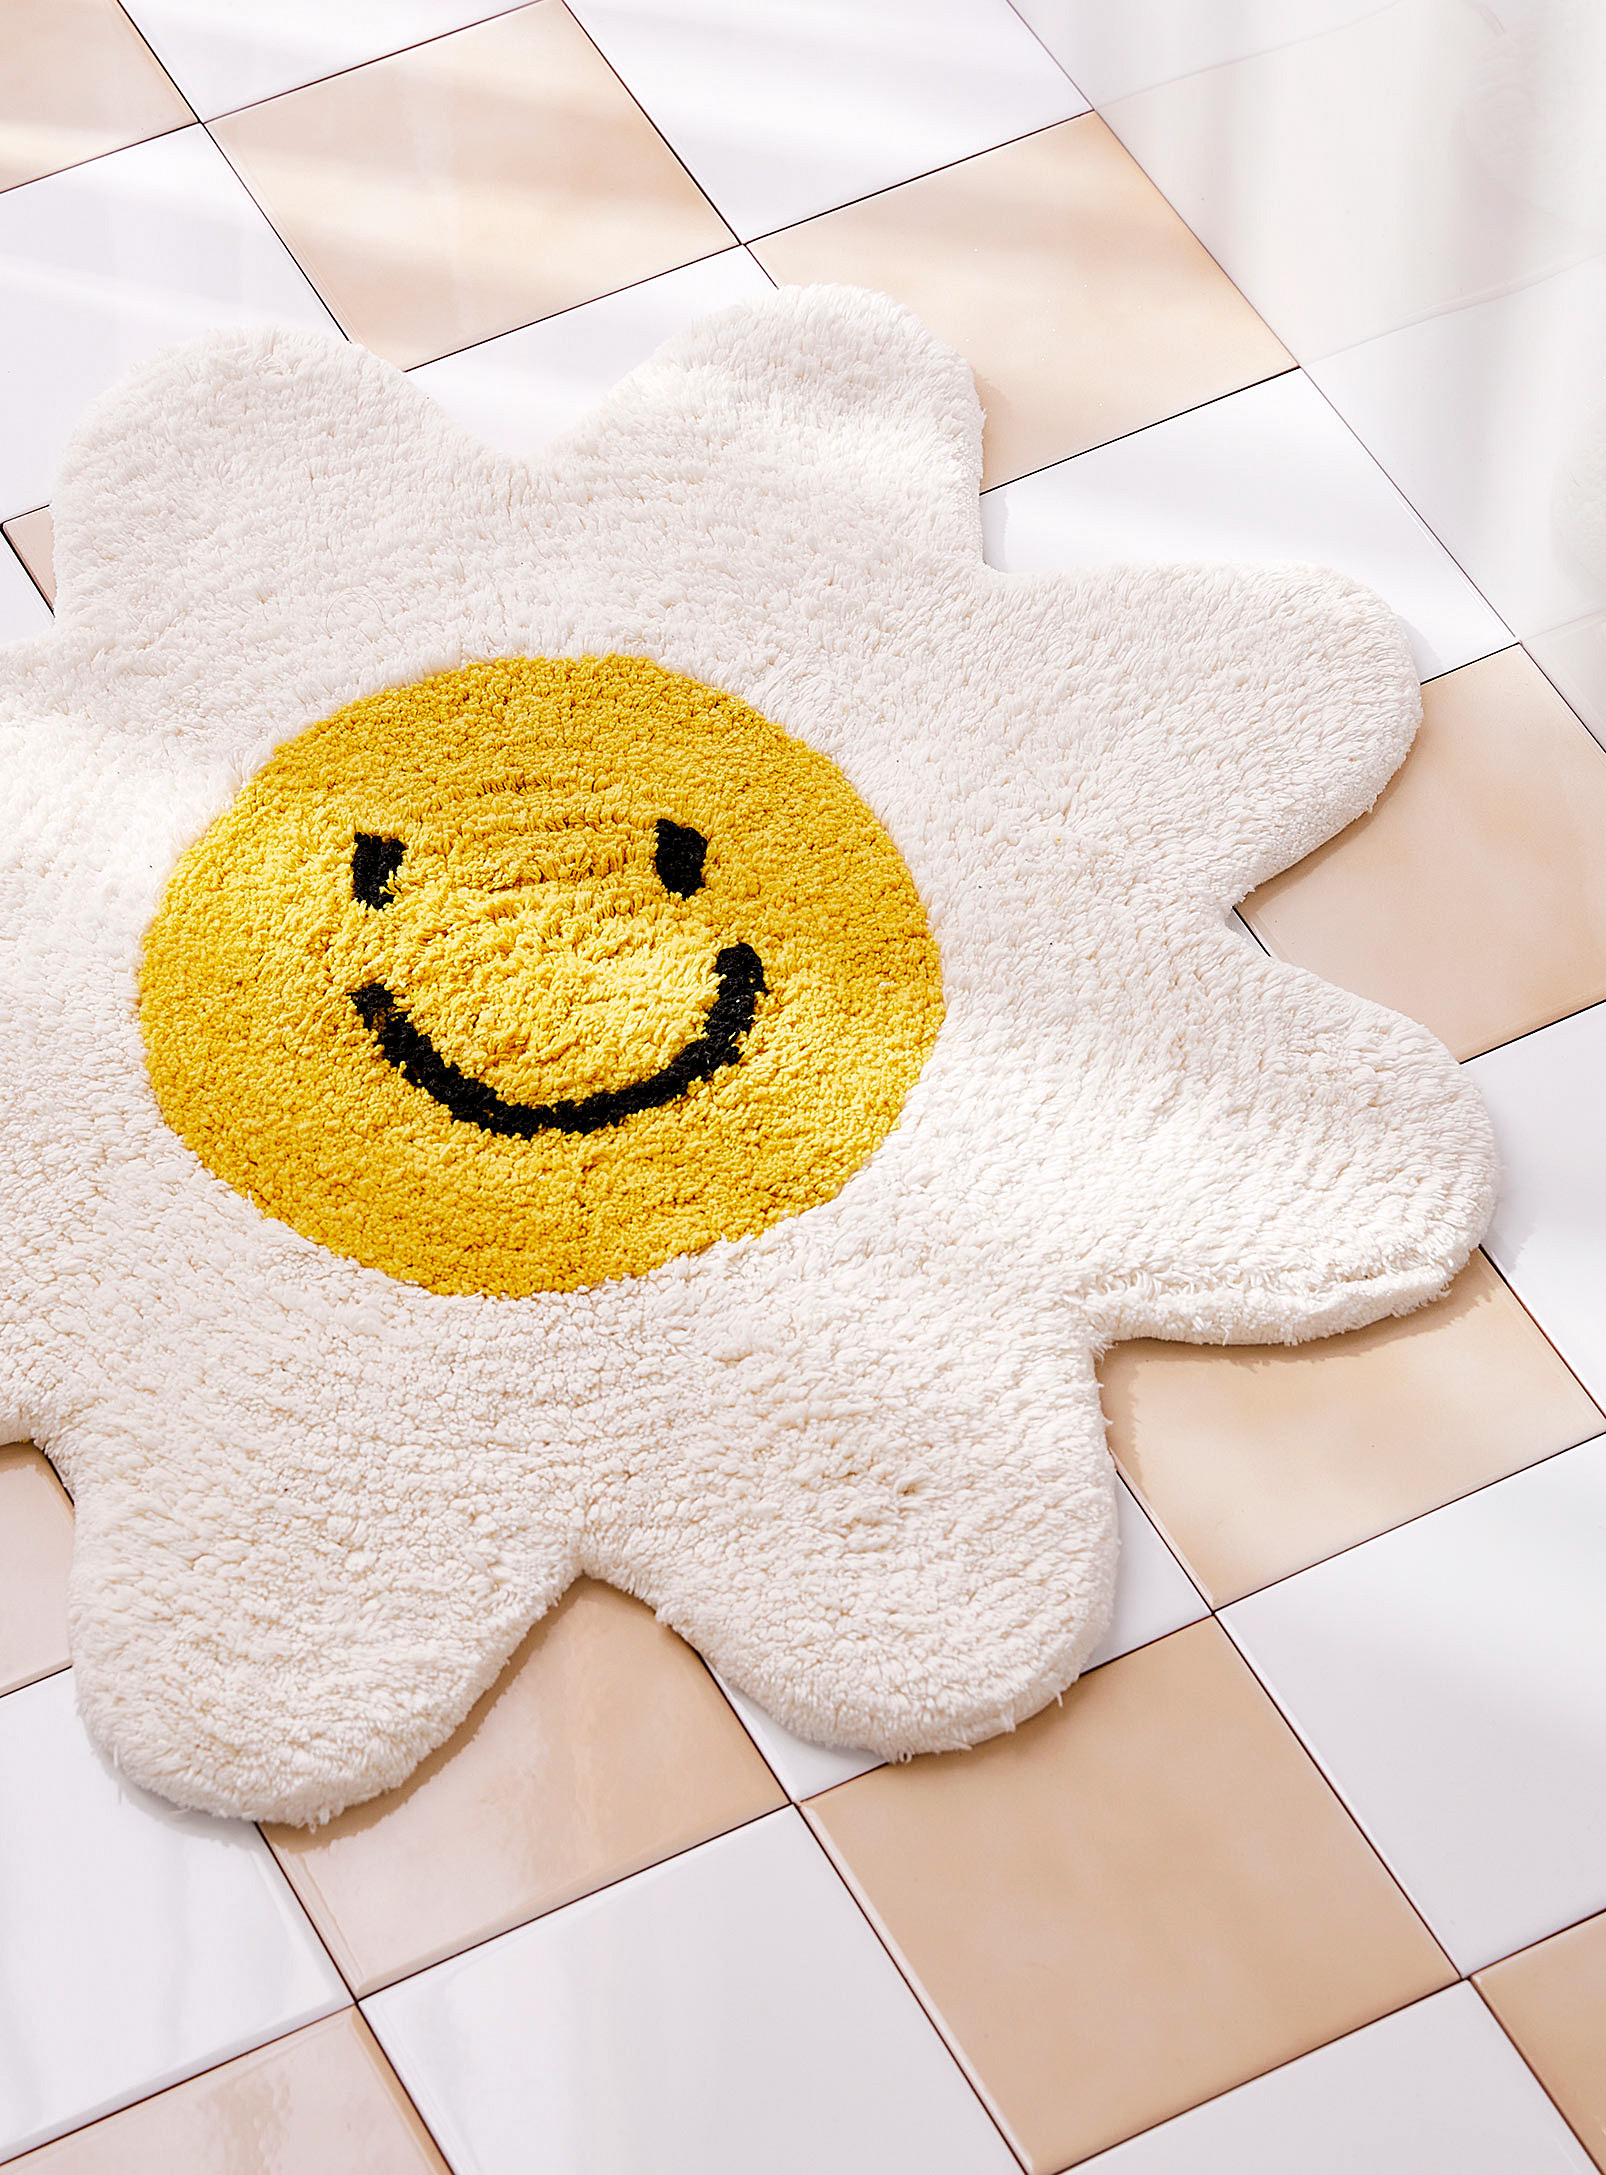 Simons Maison - Daisy smile organic cotton bath mat 60 x 60 cm